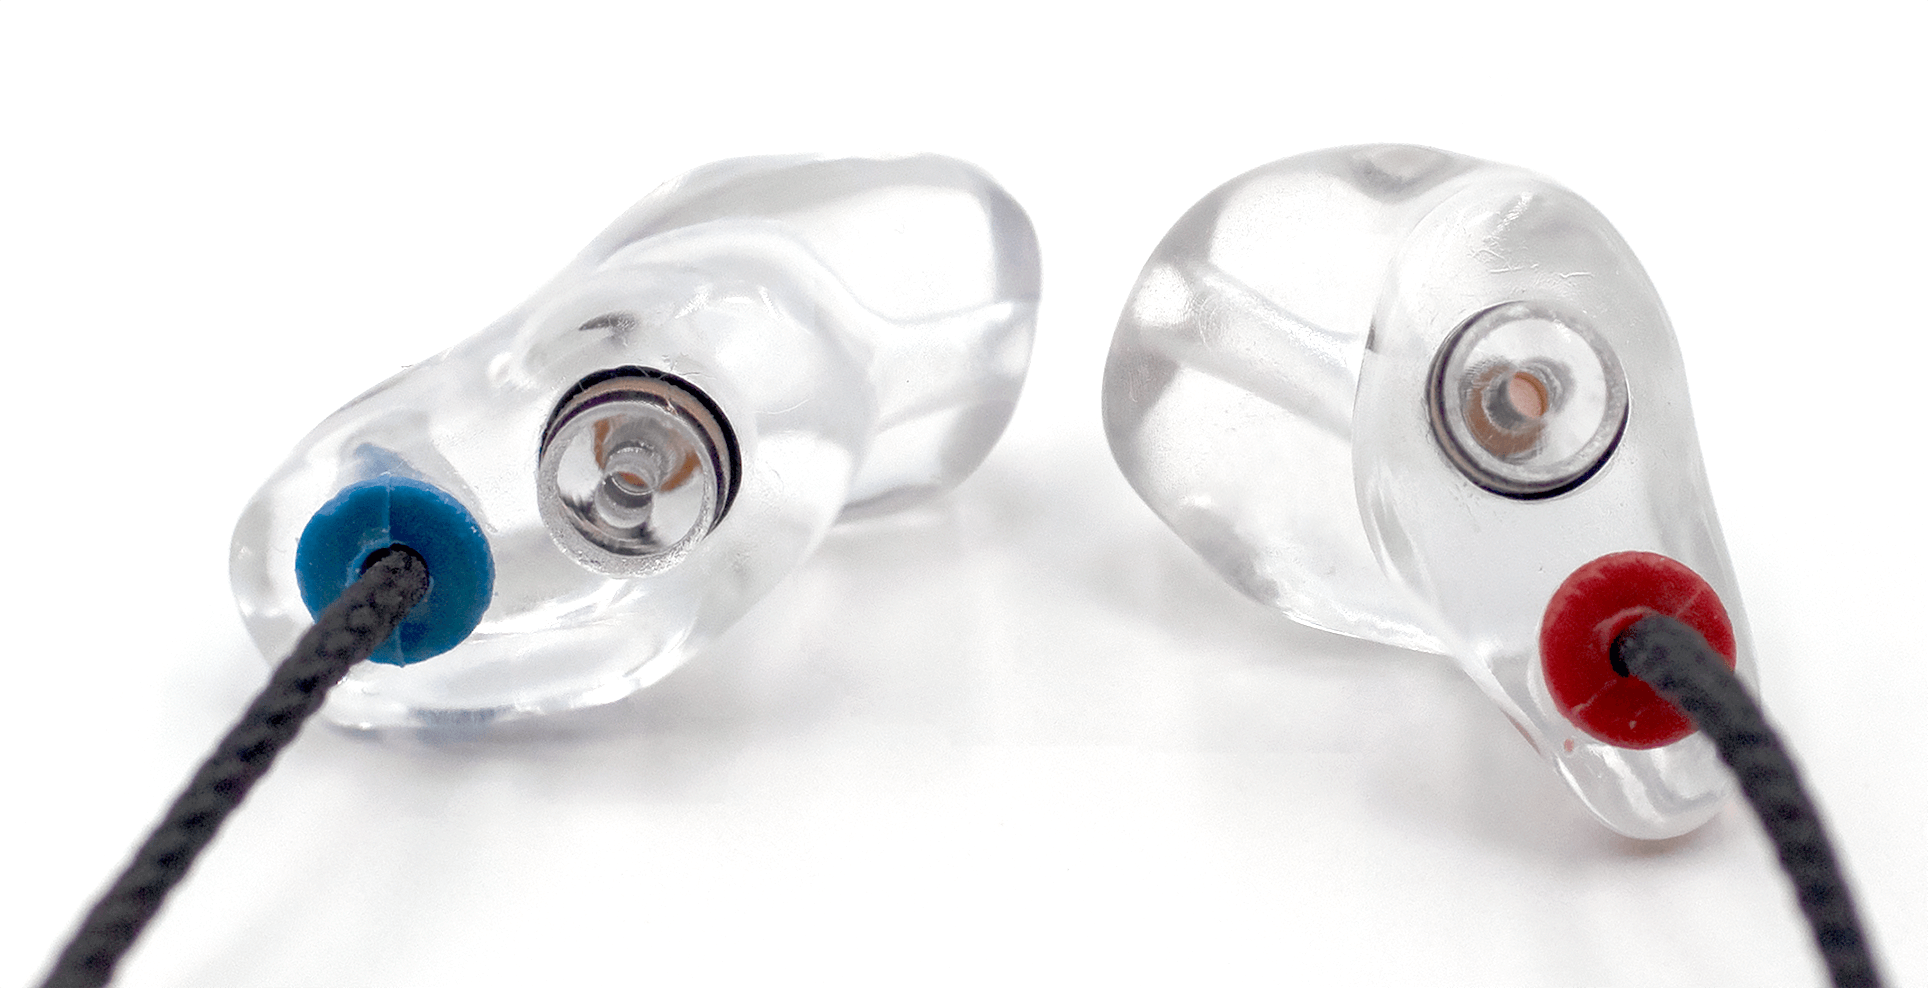 Inearz musician custom earplugs with filters and lanyard